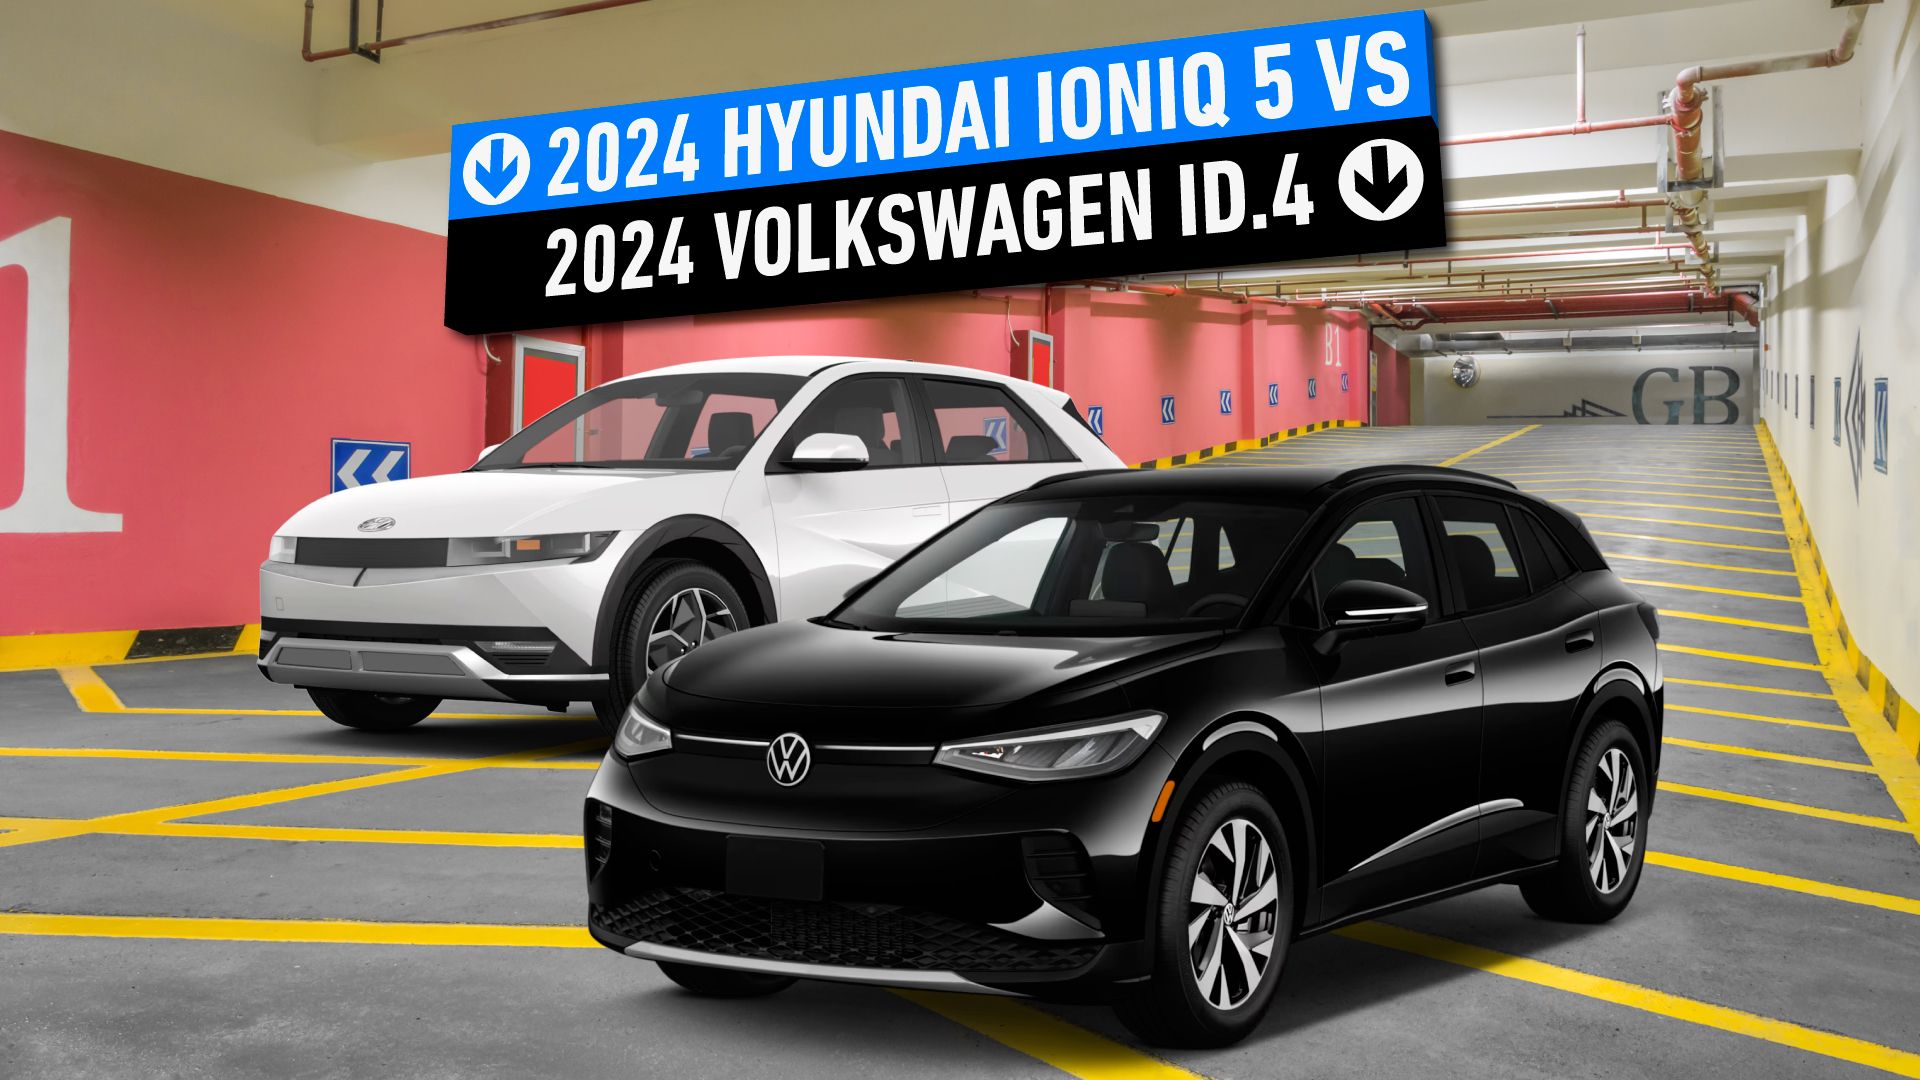 2024 Hyundai Ioniq 5 Vs 2024 Volkswagen ID.4